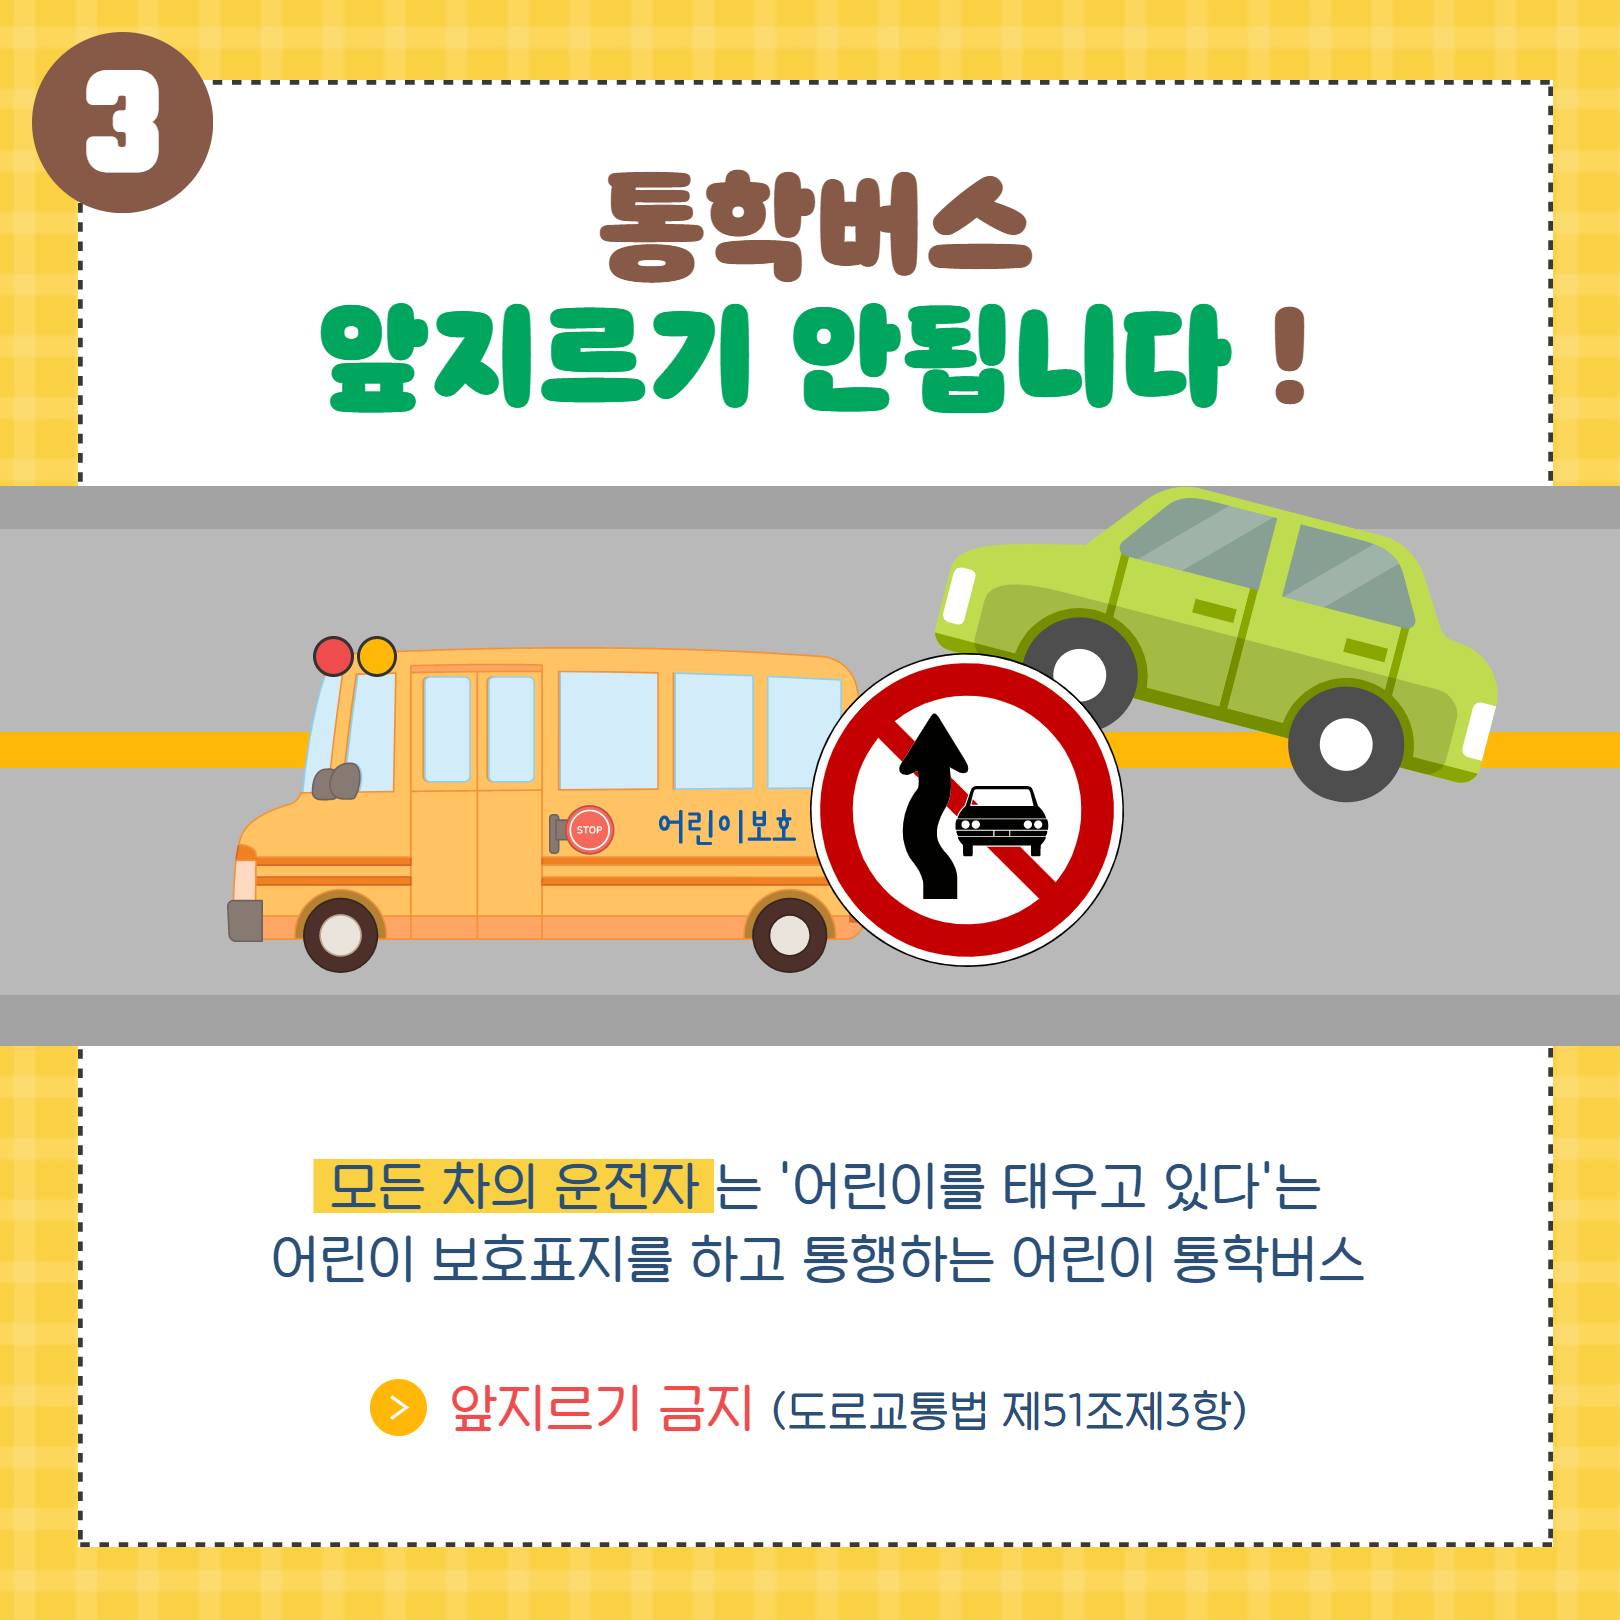 통학버스를 만나면 어린이의 안전을 위해 꼭 일시정지 당부드립니다.(인스타그램)의 파일 이미지